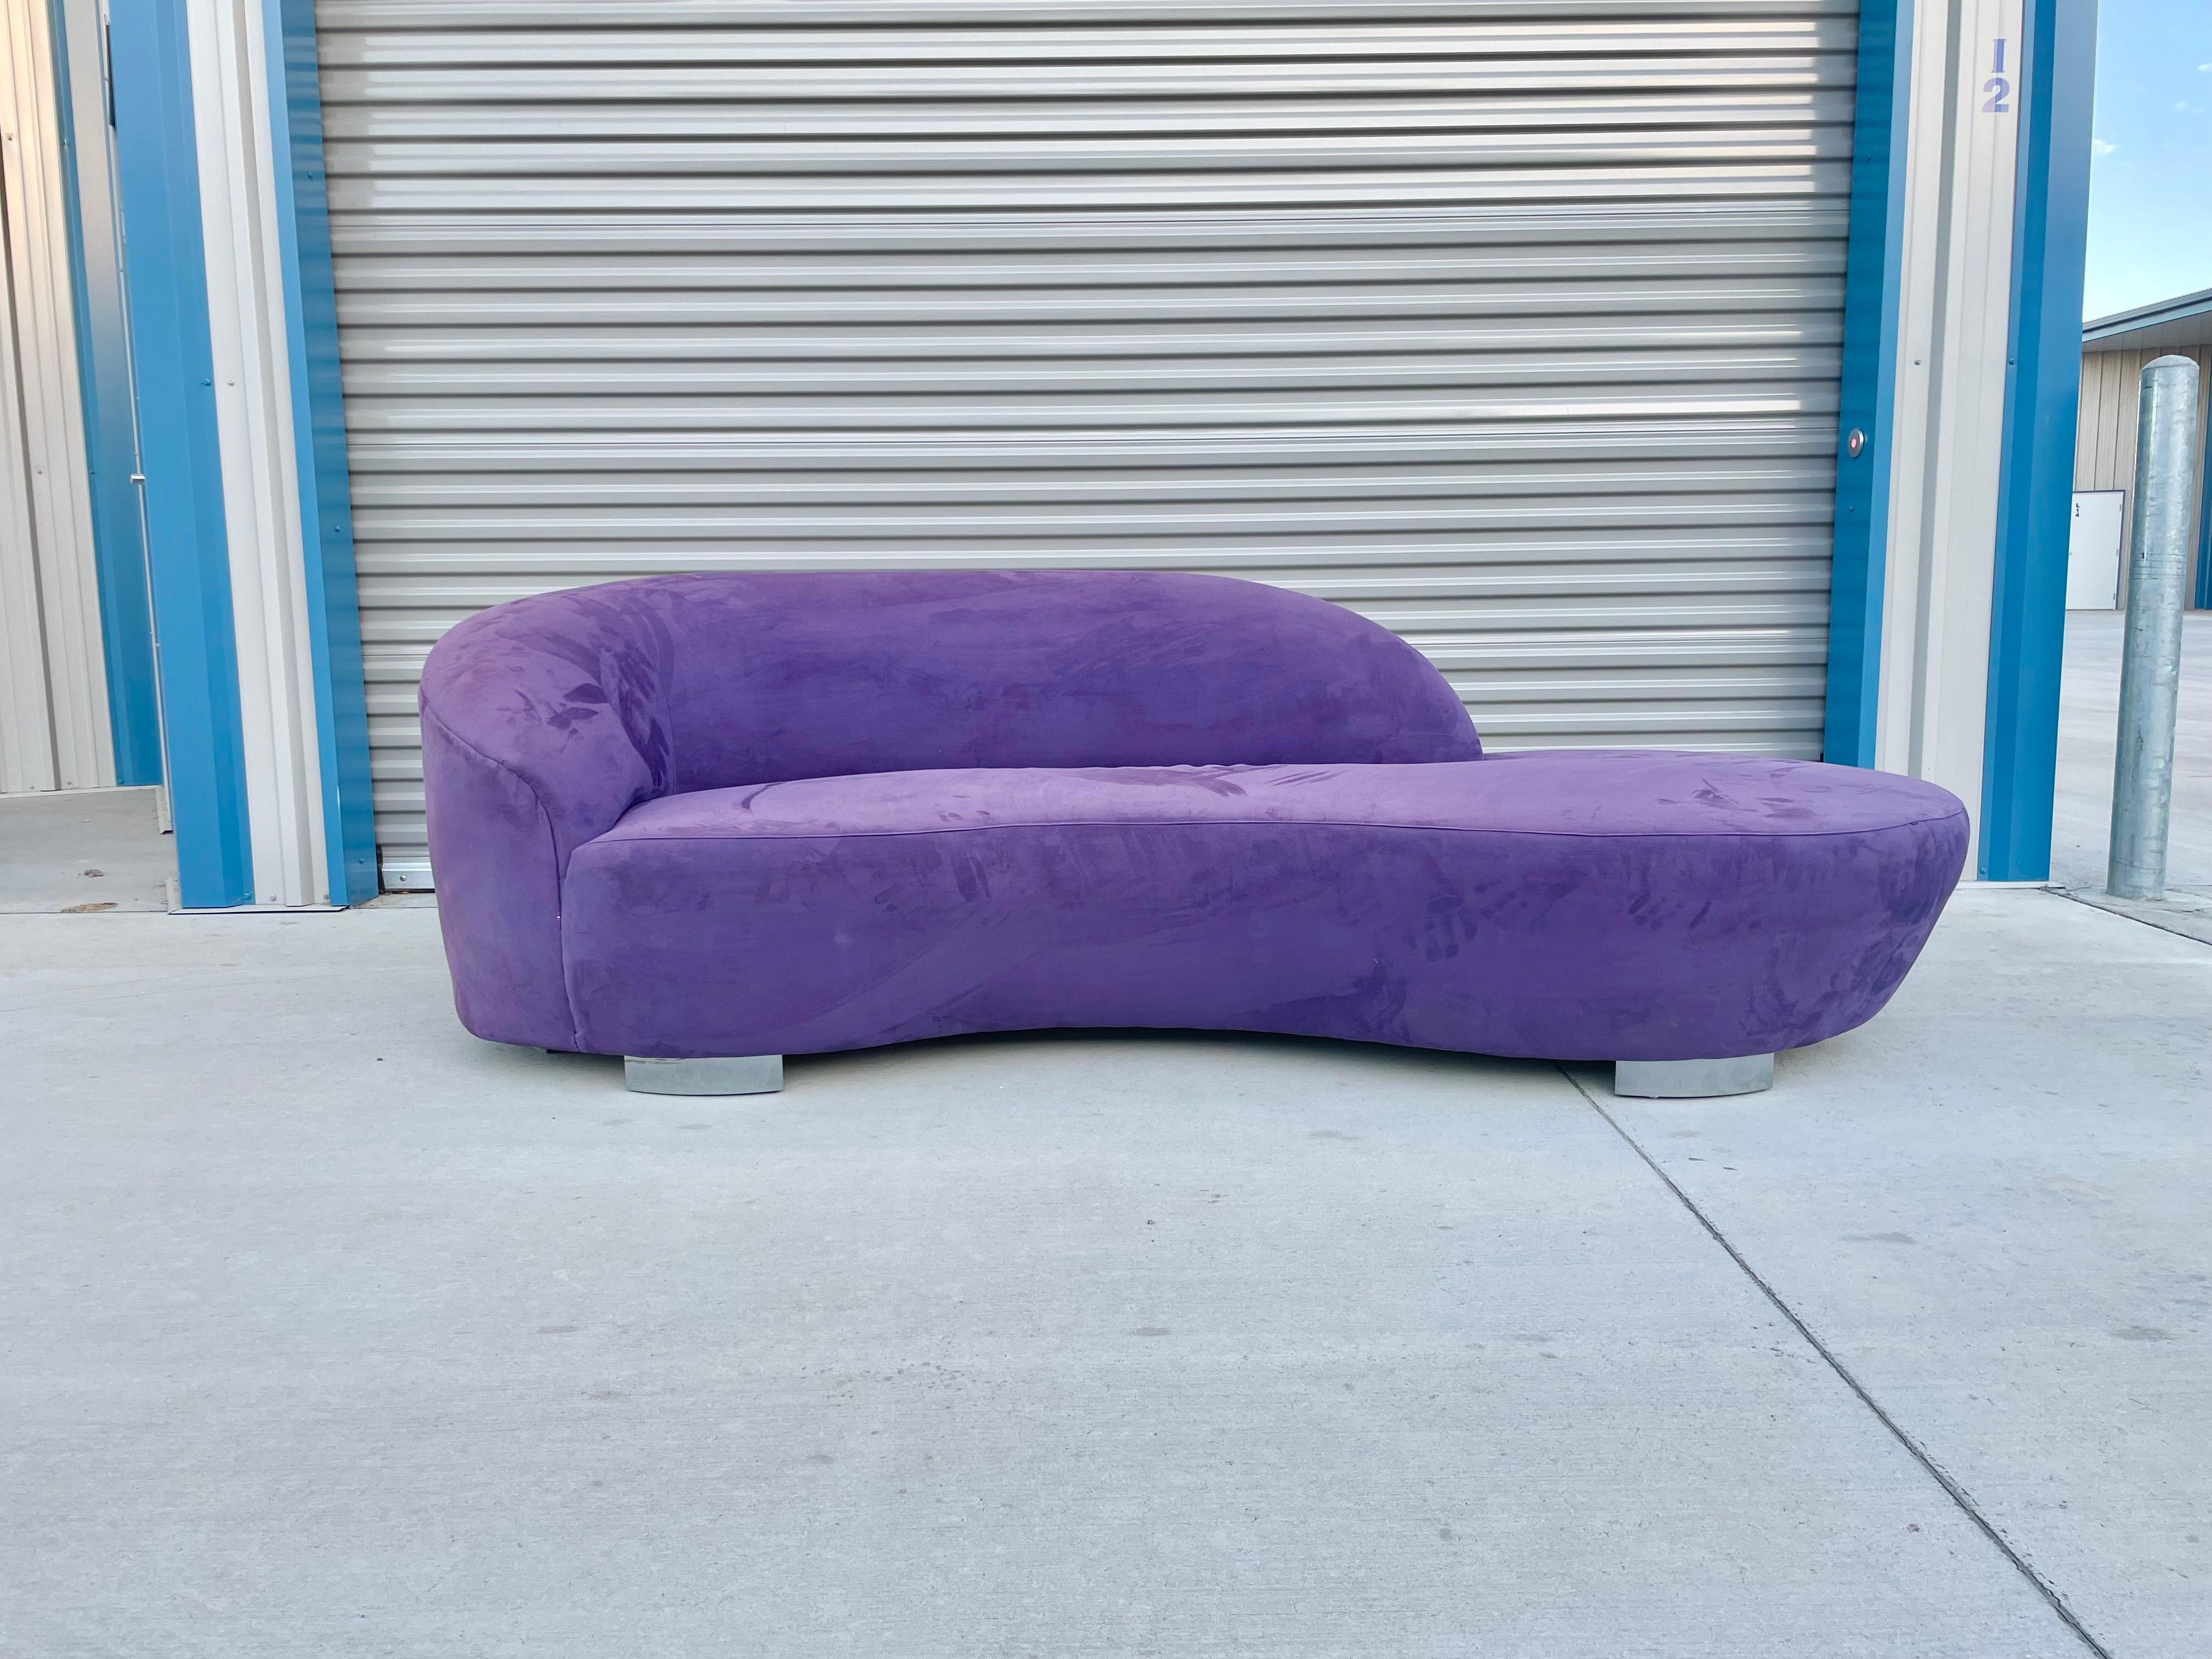 Vintage Wolke Sofa entworfen und hergestellt von Weiman in den Vereinigten Staaten ca. 1980er Jahren. Dieses schöne Mid-Century-Sofa ist bekannt für seine einzigartige geschwungene Form, die ihm den Namen Cloud gibt. Das Sofa sitzt auch auf vier